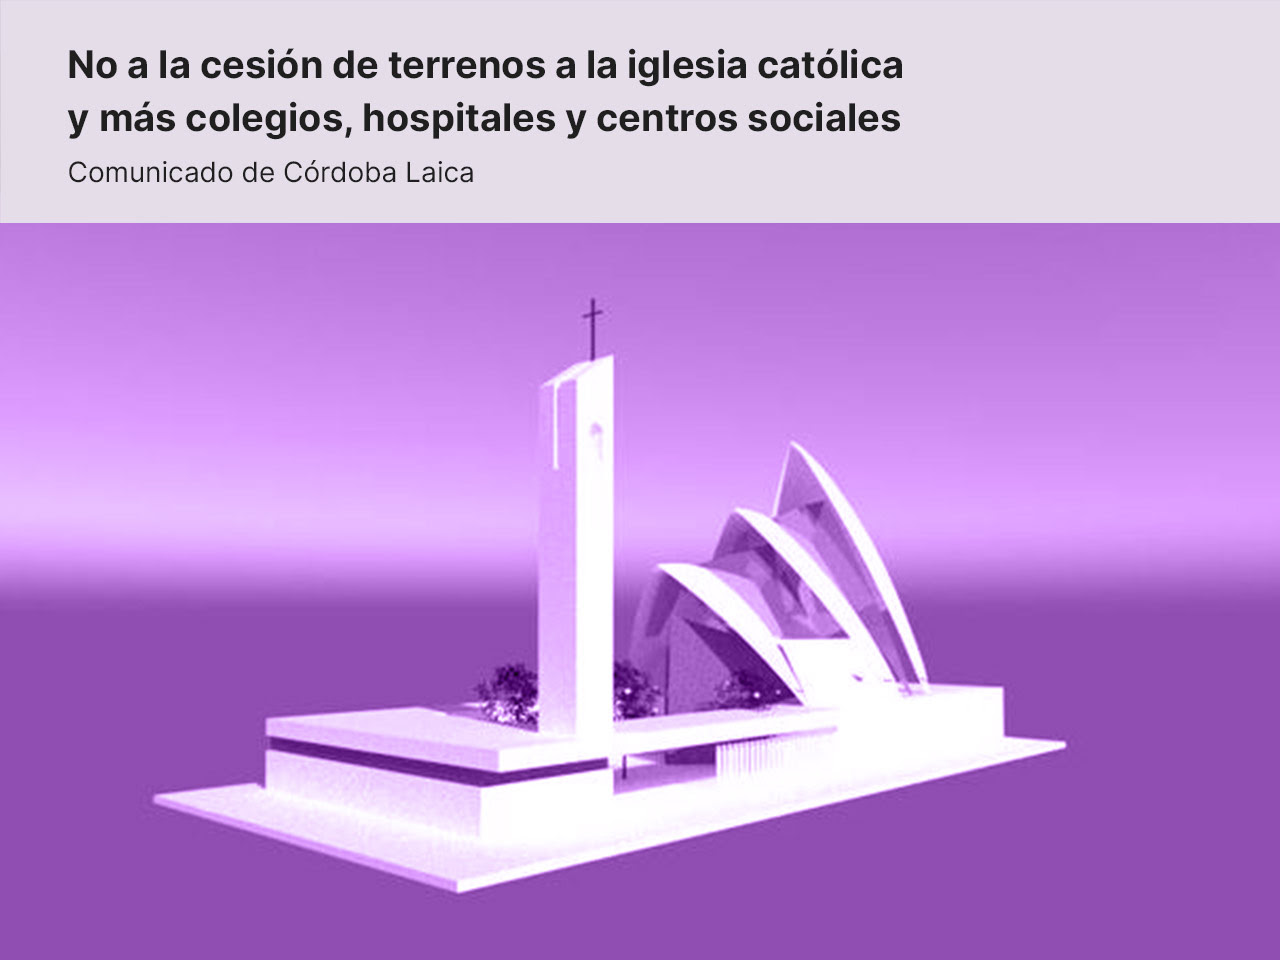 Comunicado de Córdoba Laica: No a la cesión de terrenos a la iglesia católica y más colegios, hospitales y centros sociales